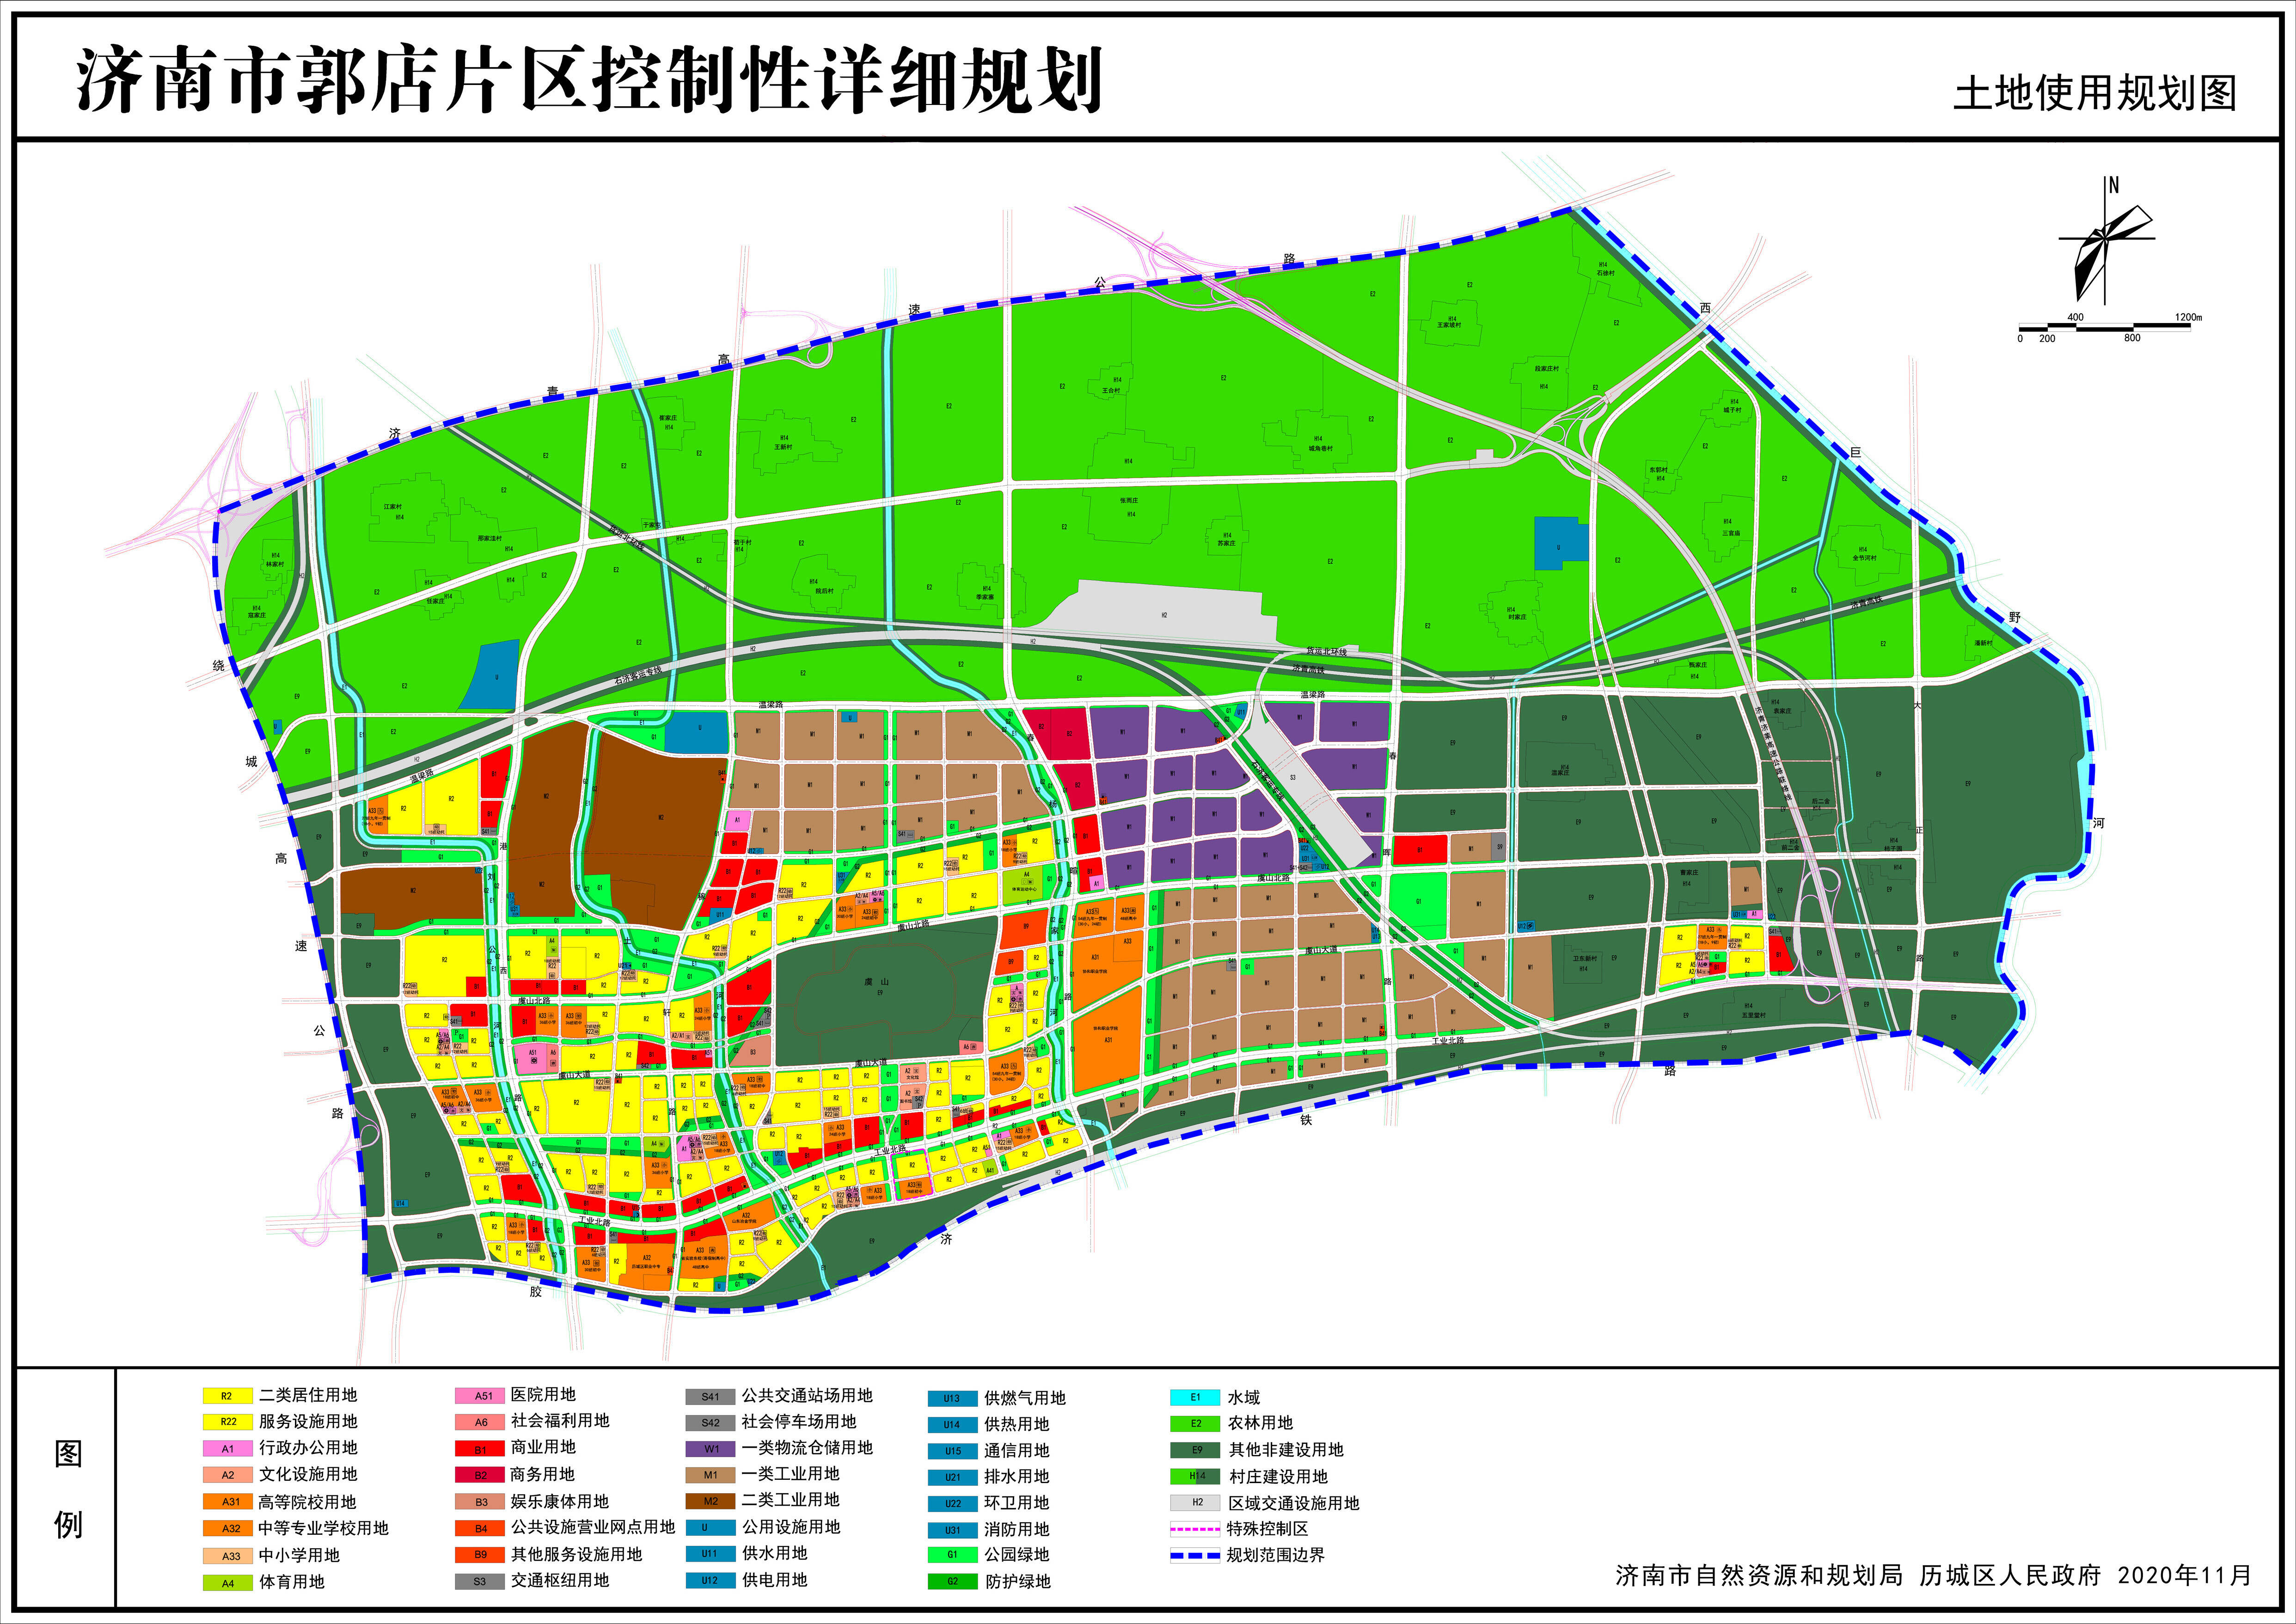 十四五规划明确支持与济南毗连区域融入新版省会城市规划